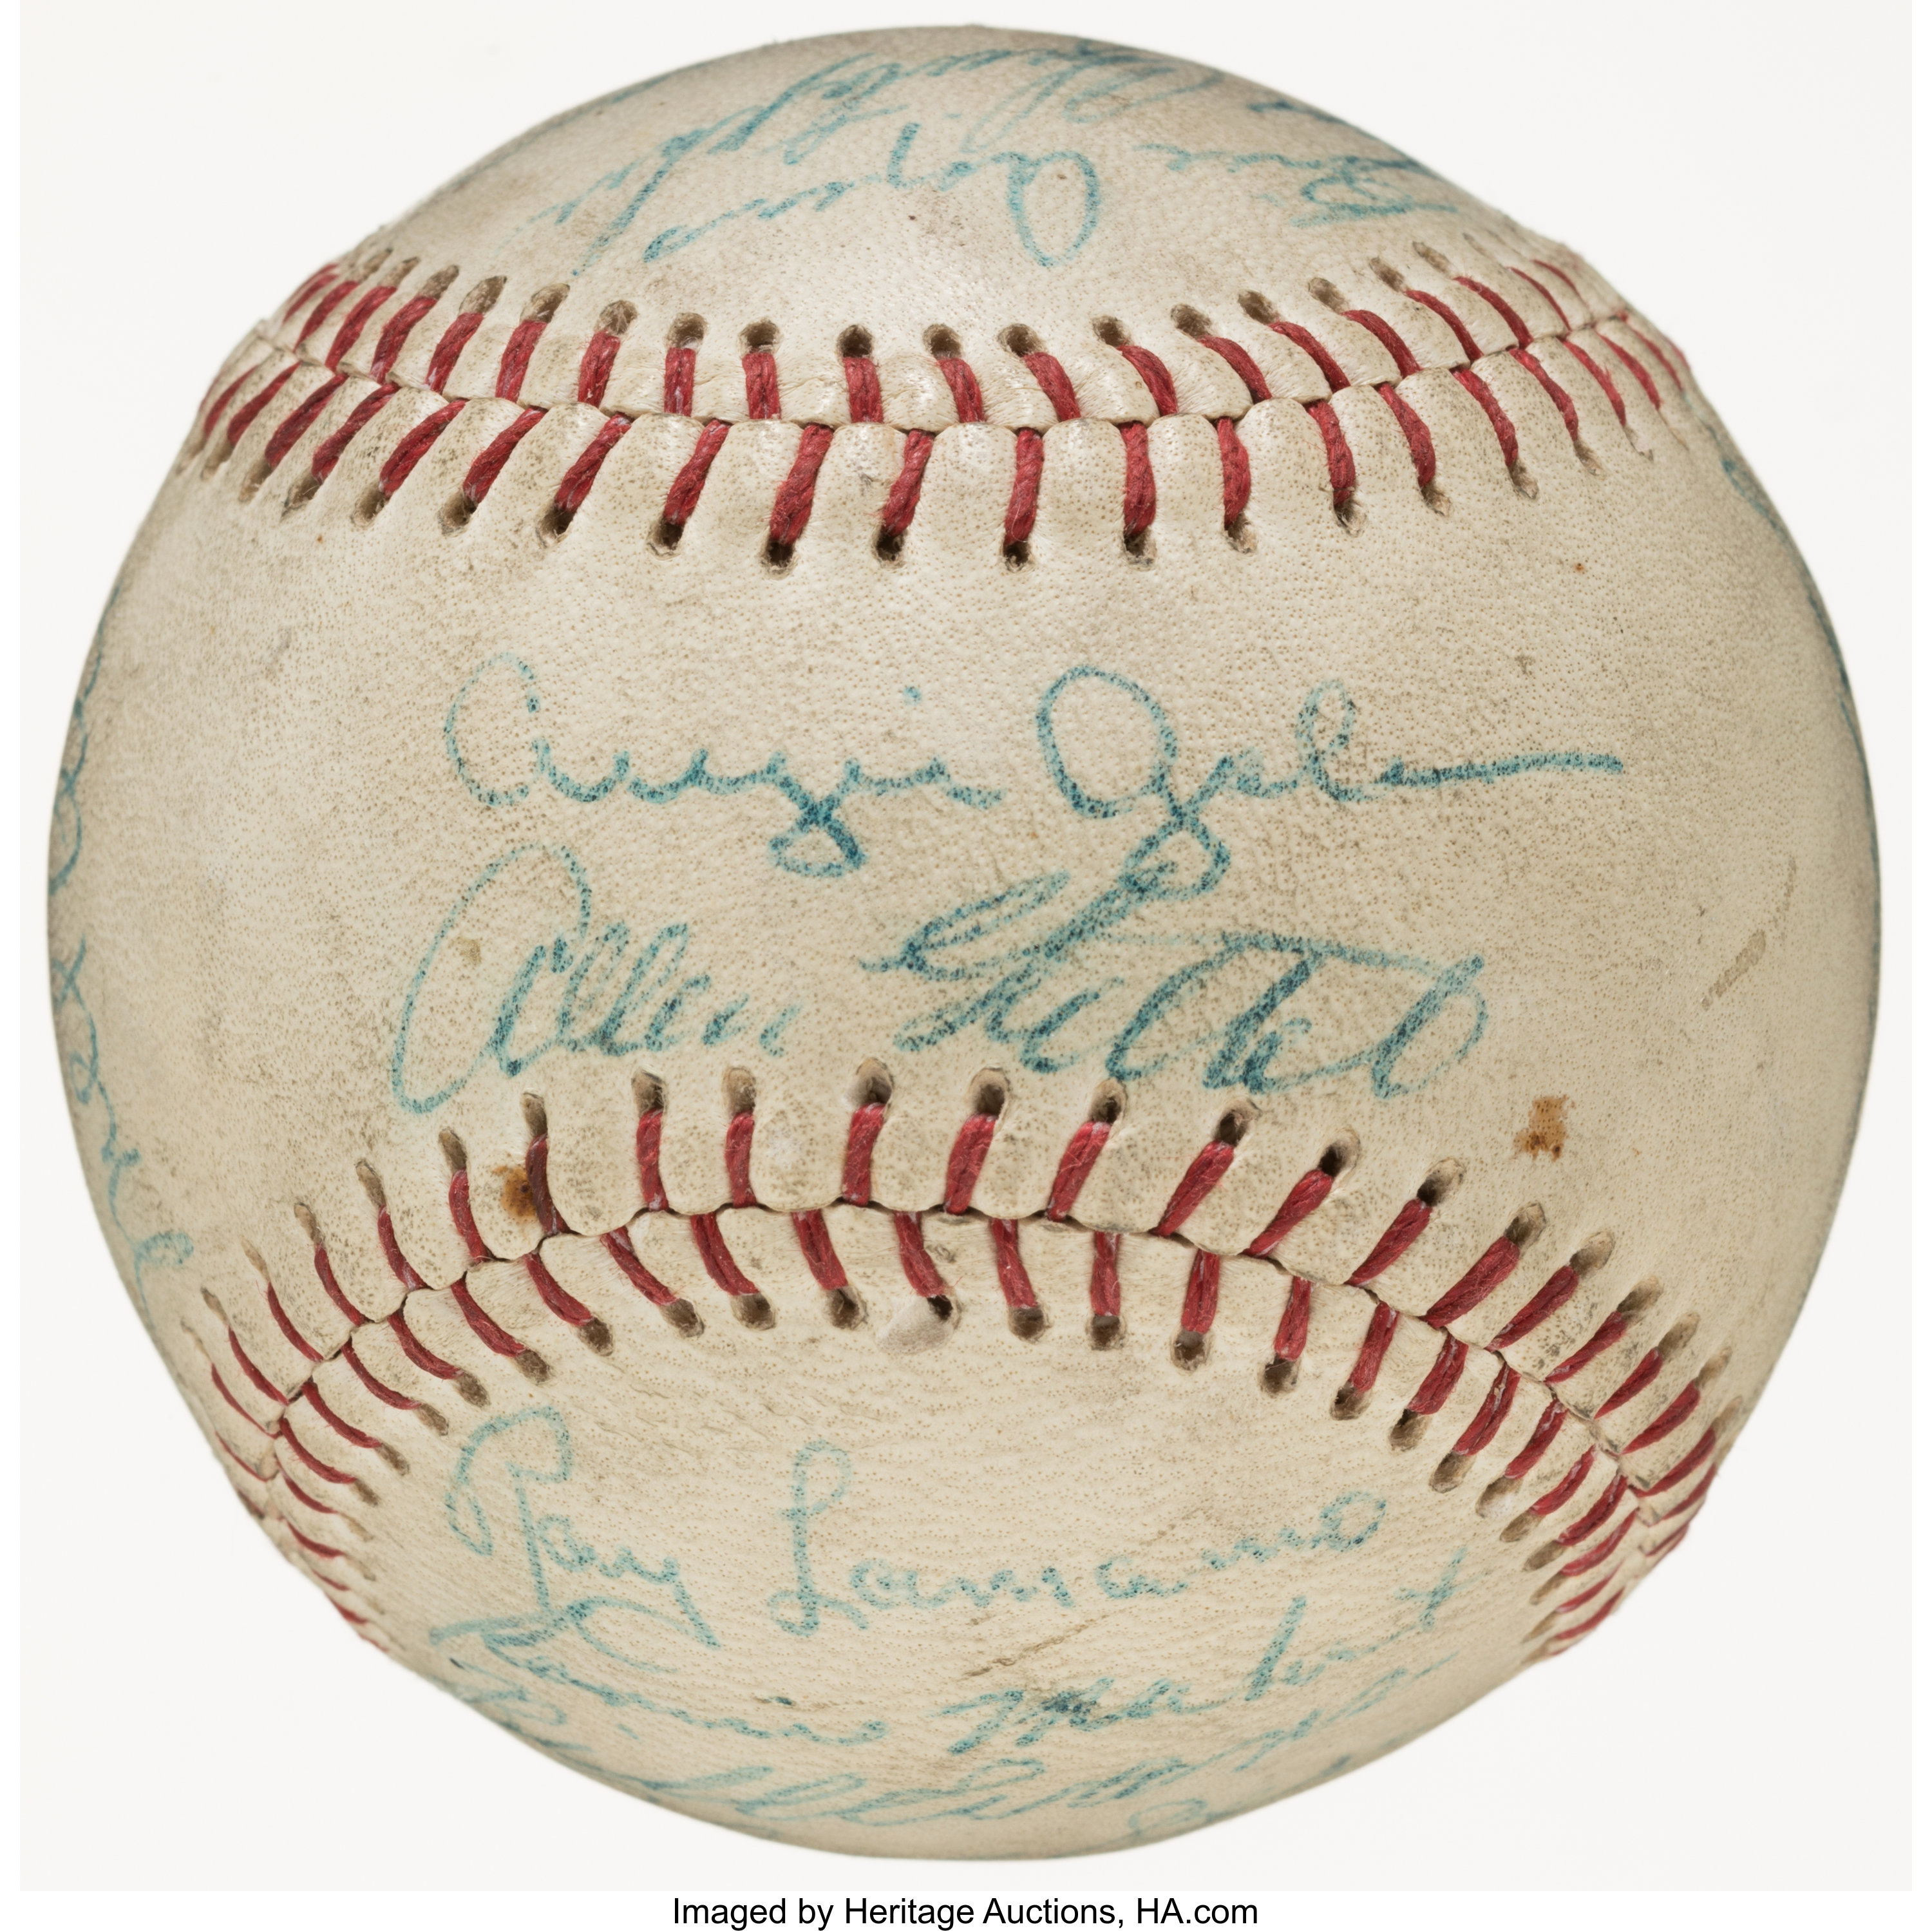 1952 Oakland Oaks Team Signed Baseball with Mel Ott (20